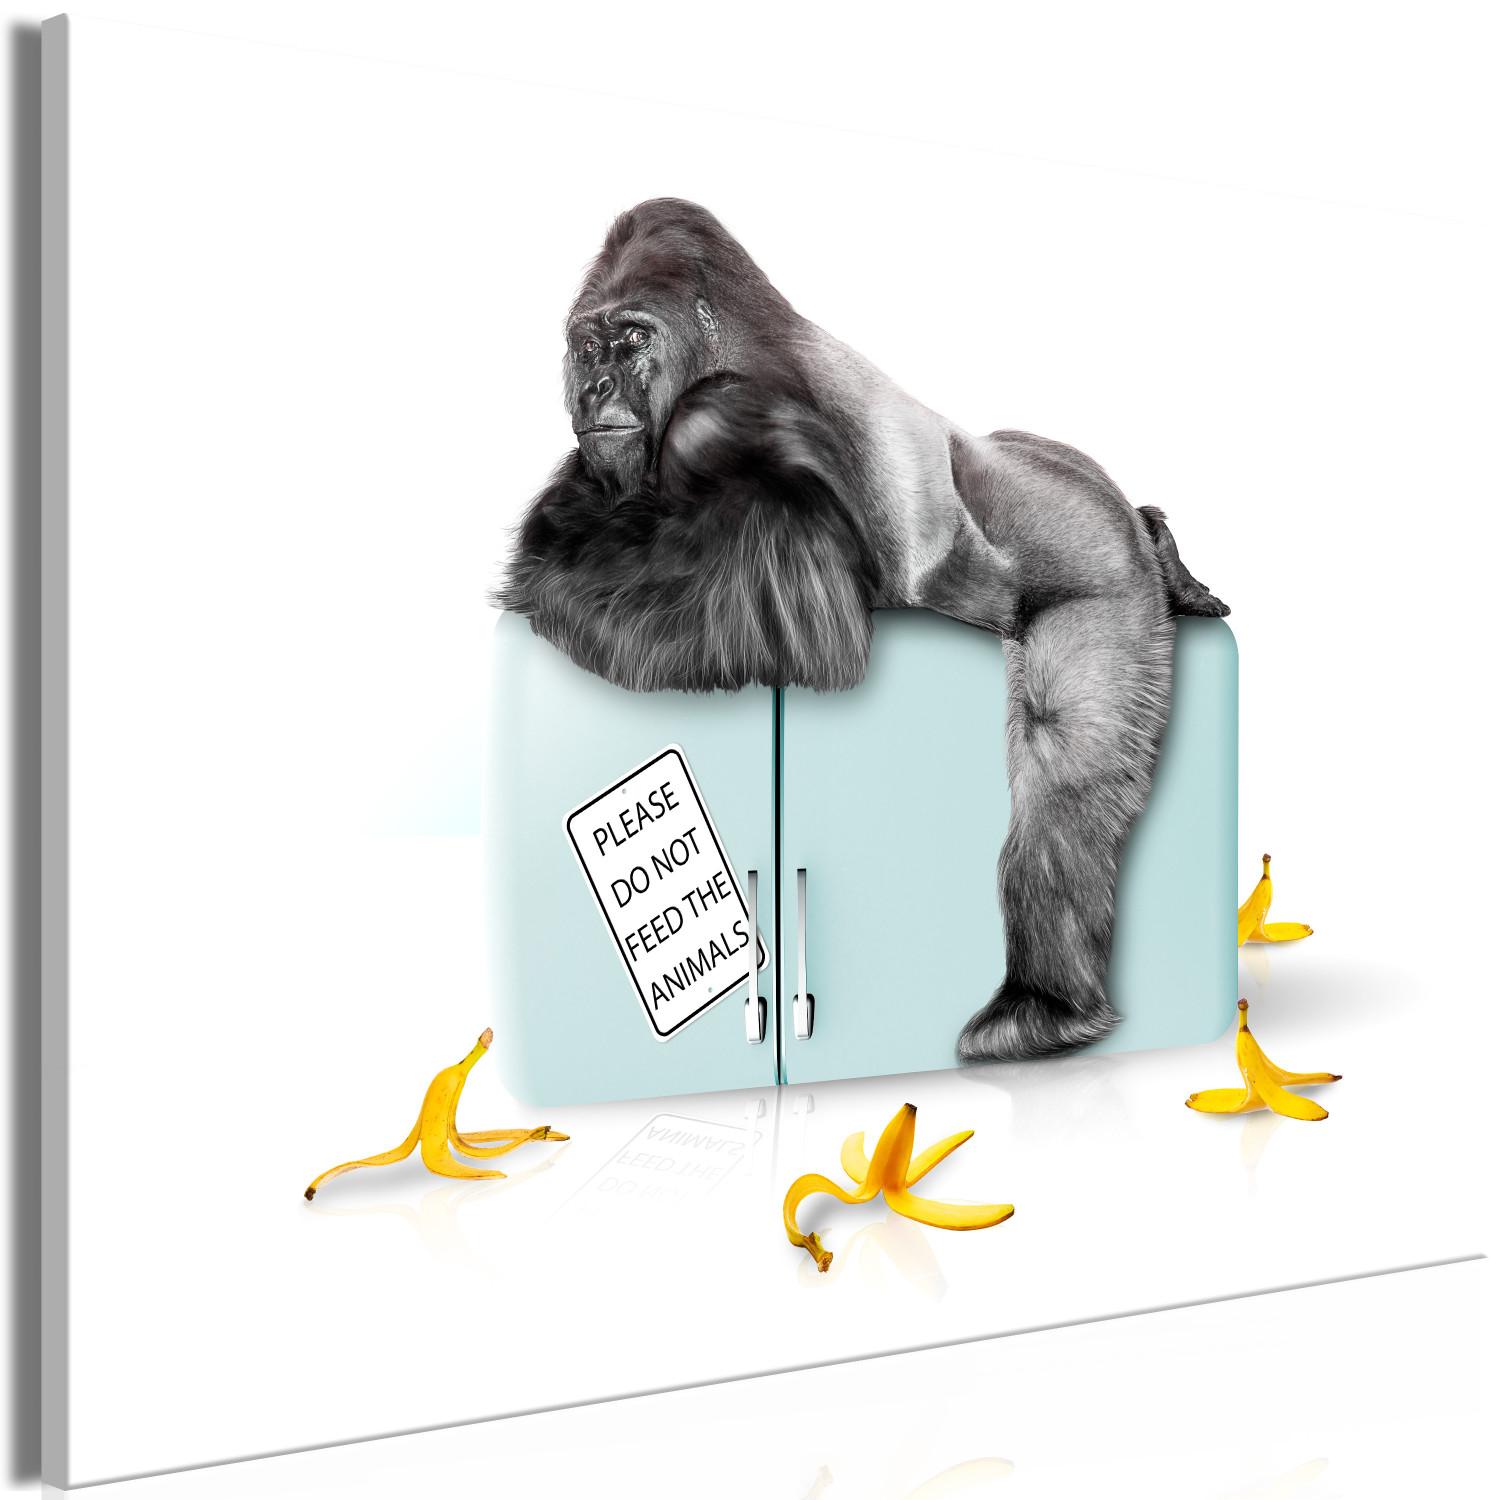 Cuadro Refrigerador confiscado - foto divertida con gorila e inscripciones